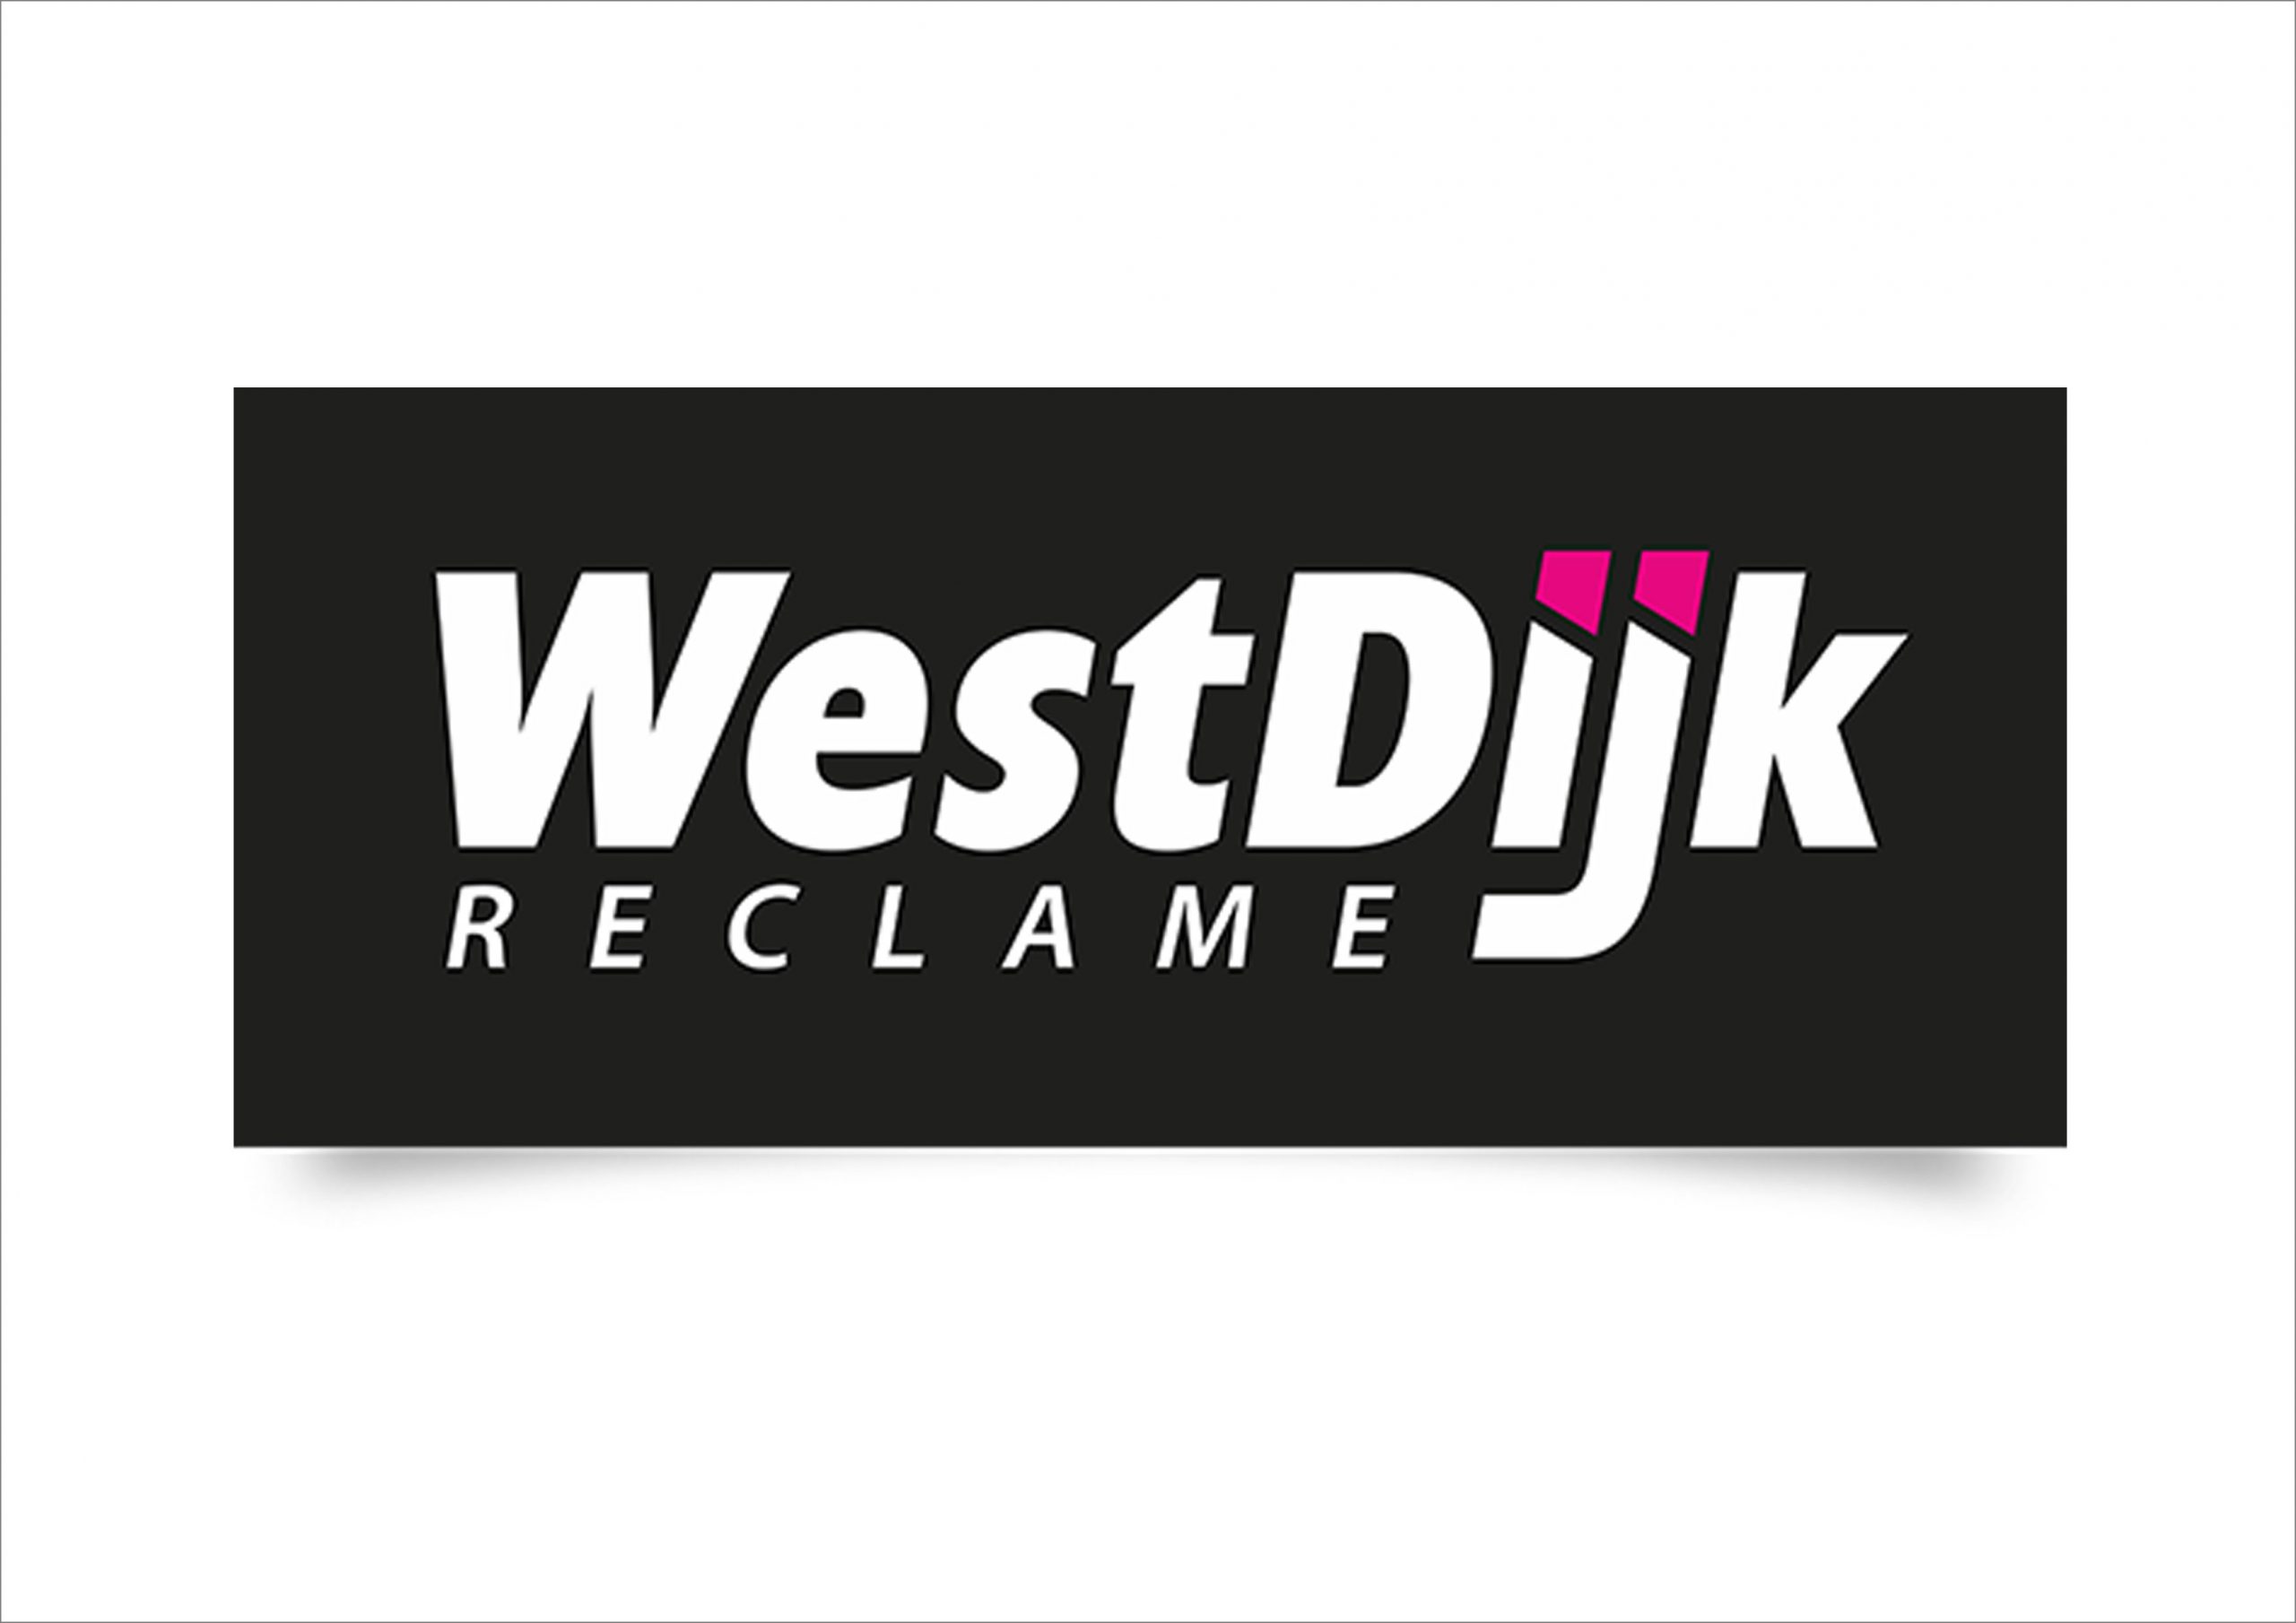 Westdijk reclame